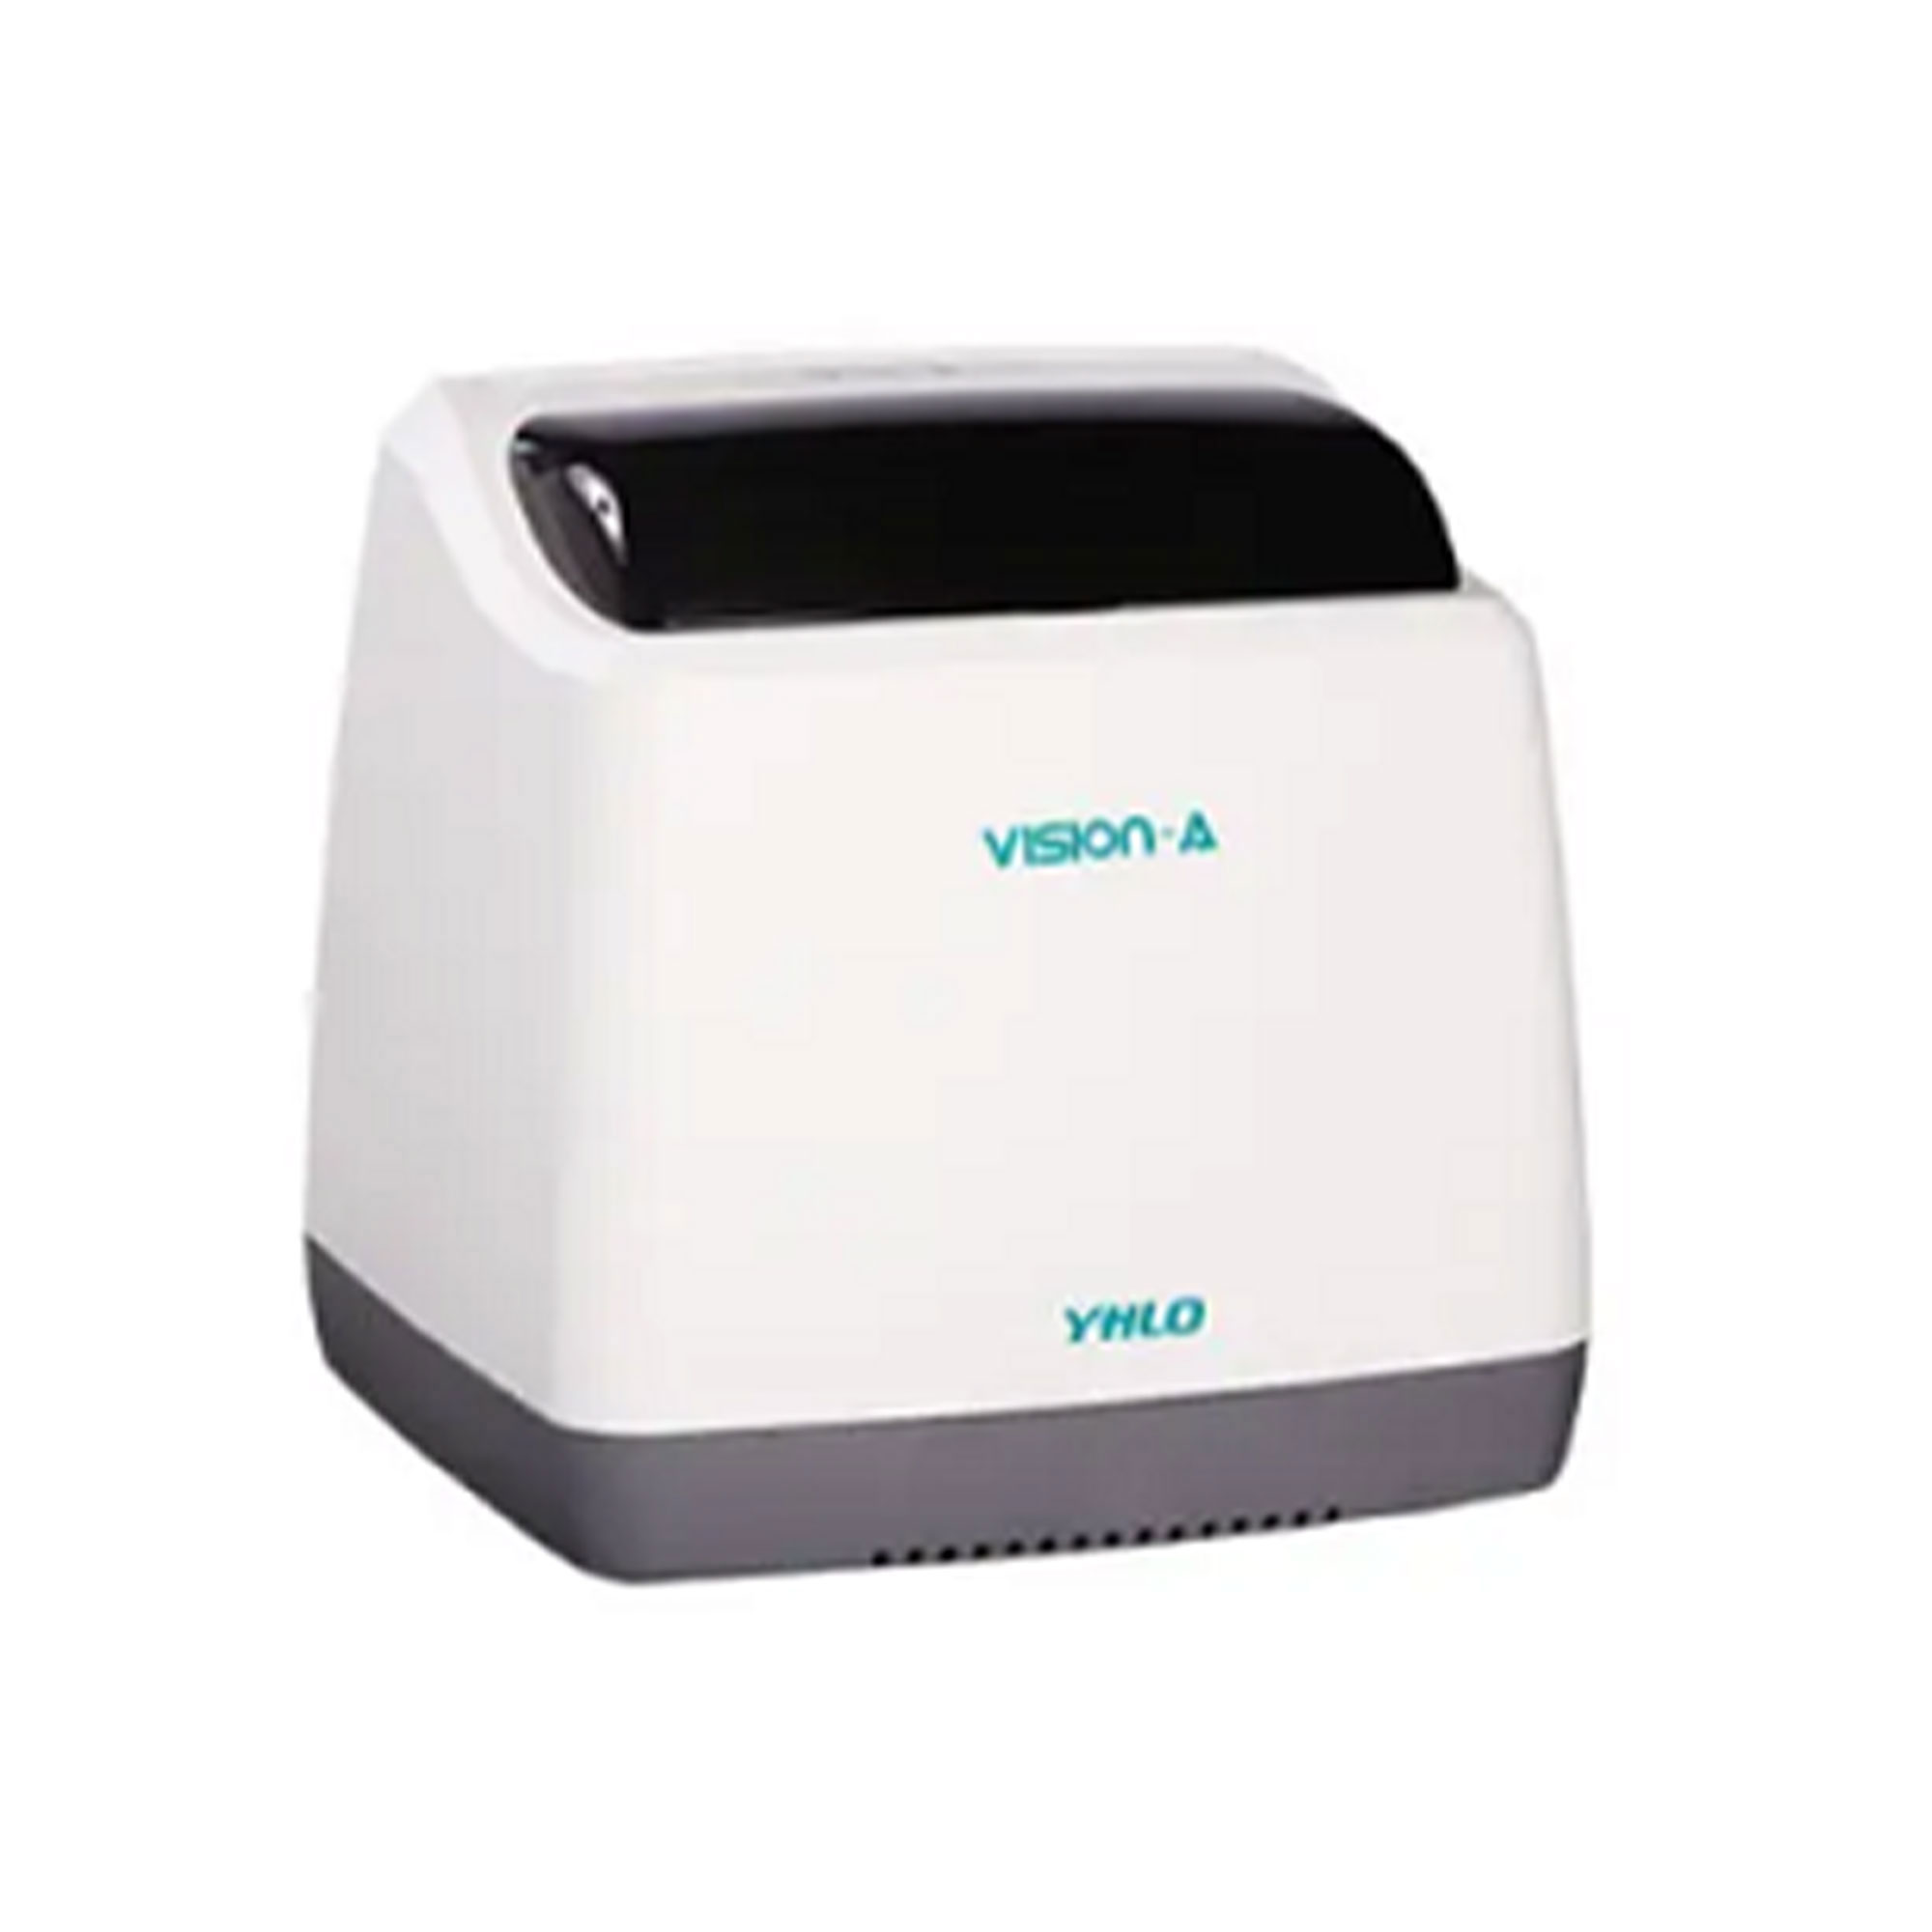 سدیمان آنالایزر 8 خانه - Vision ESR Analyzer 8 - YHLO - دستگاه - هماتولوژی و بانک خون - گروه آزمایشگاهی پادینا ویستا